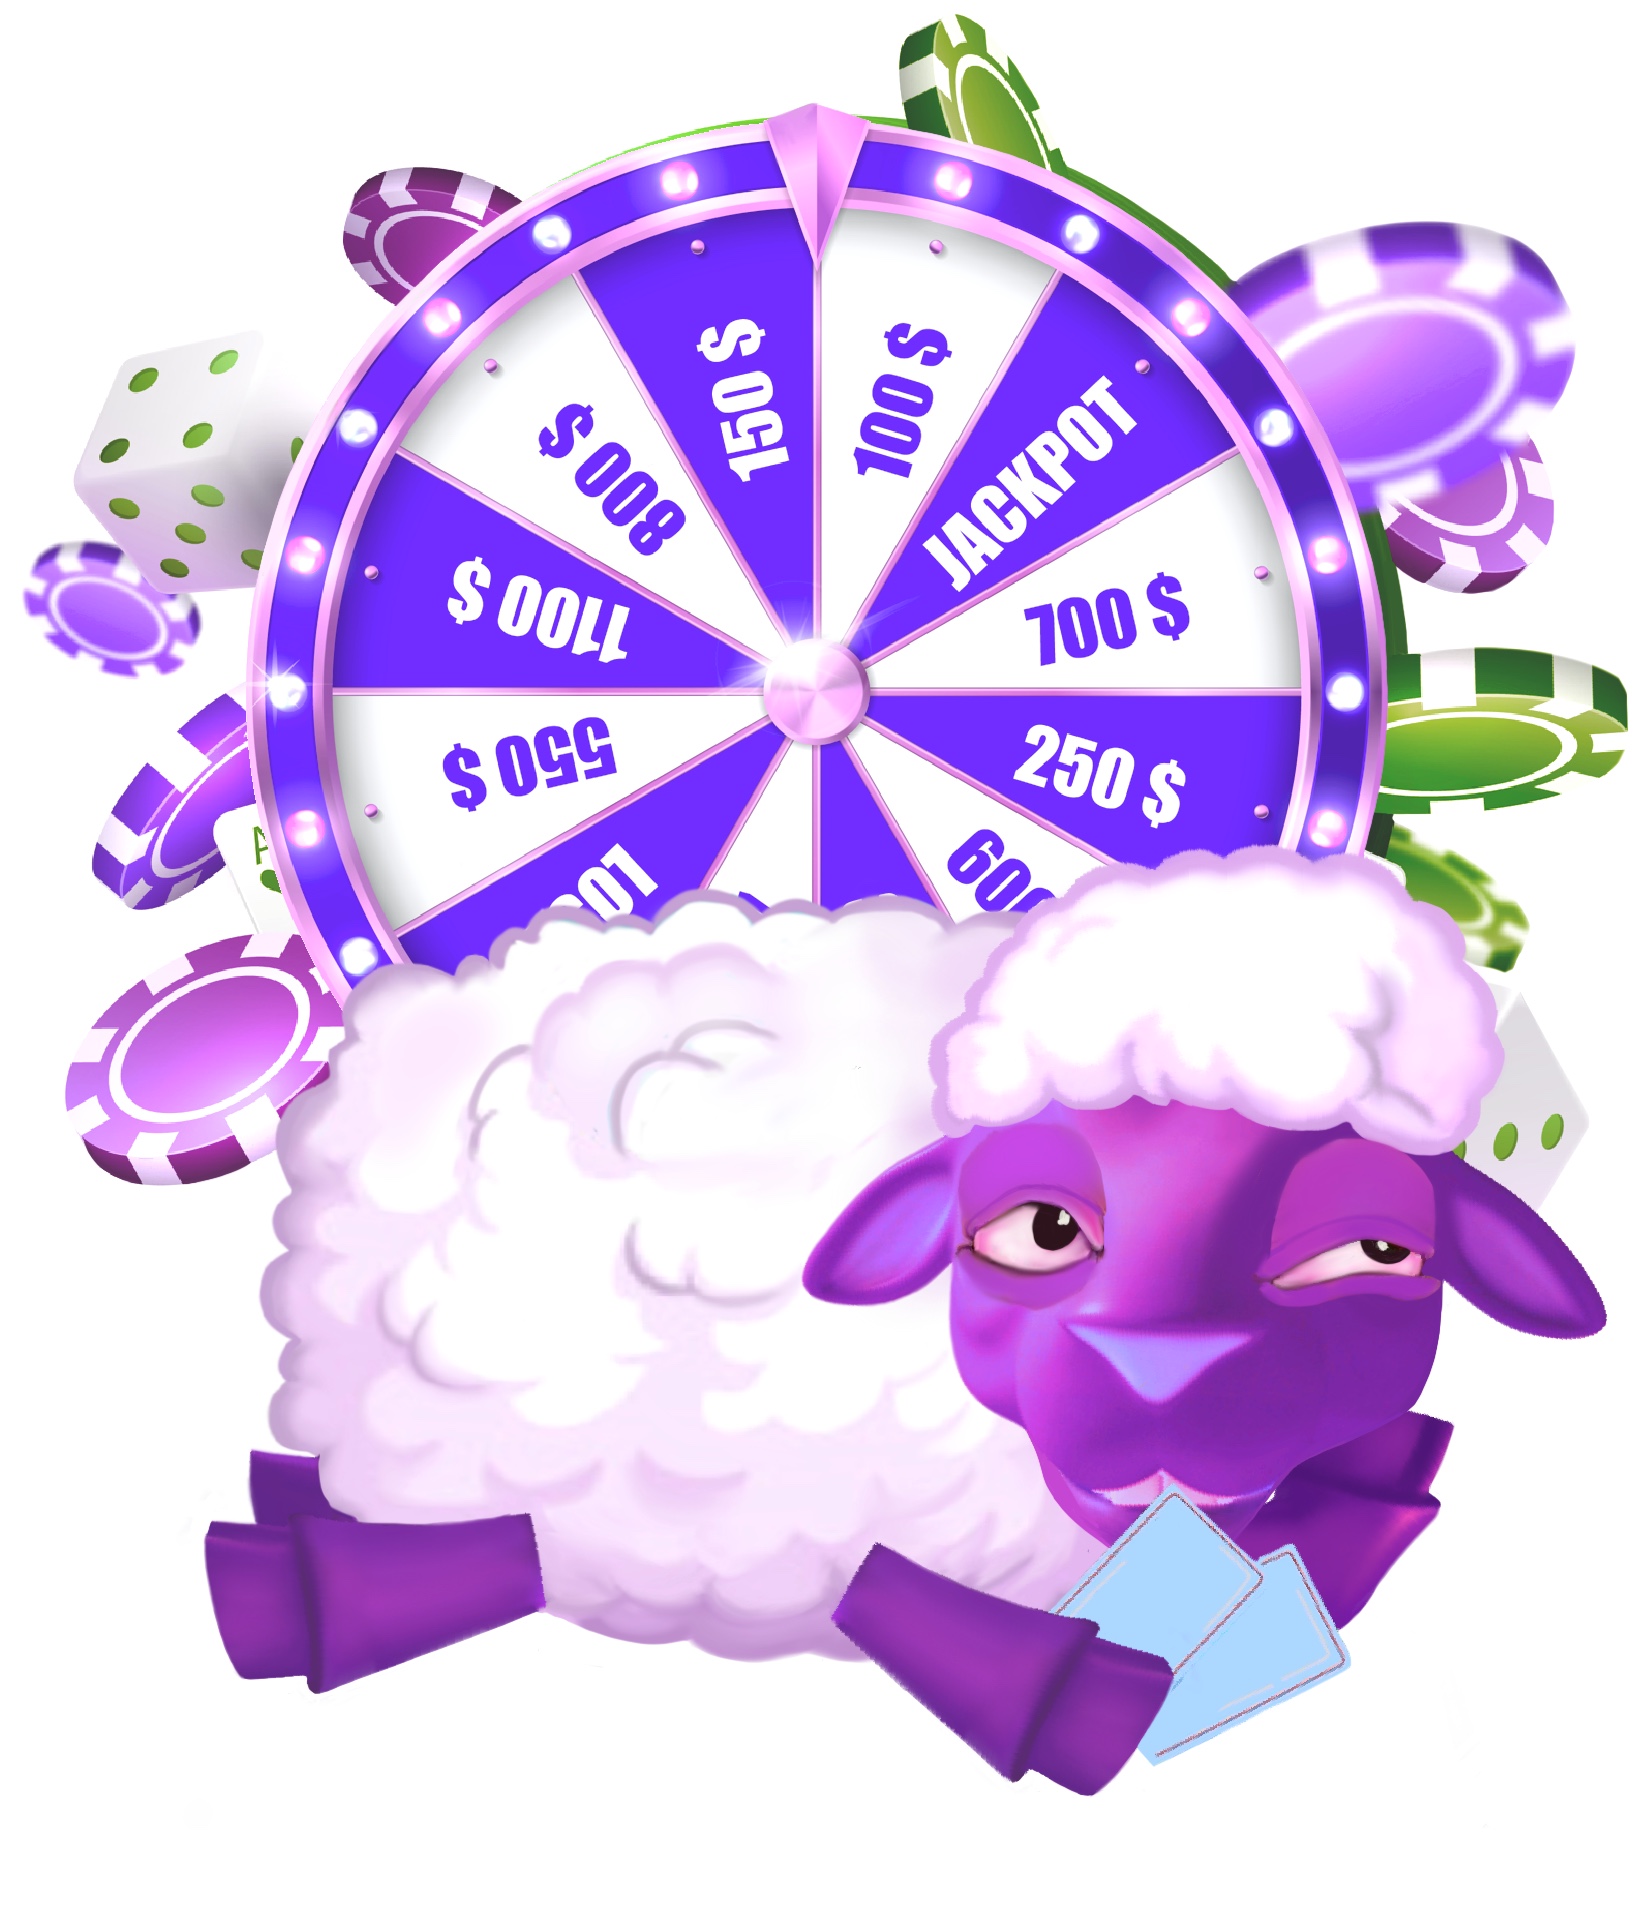 Generarated Gambler Sheeple